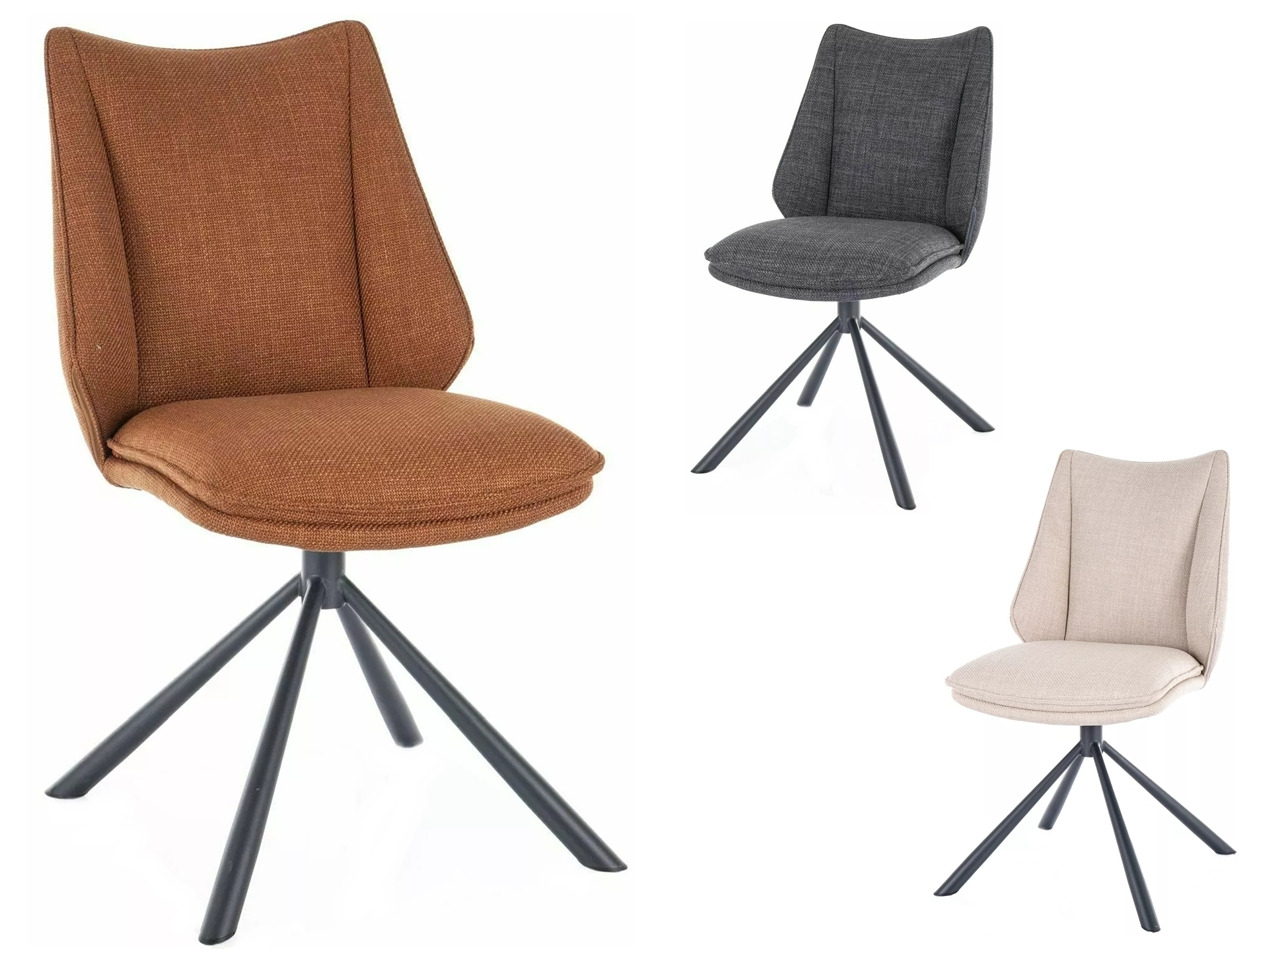 SIG-Kenzie Bjorn modern fémvázas szék